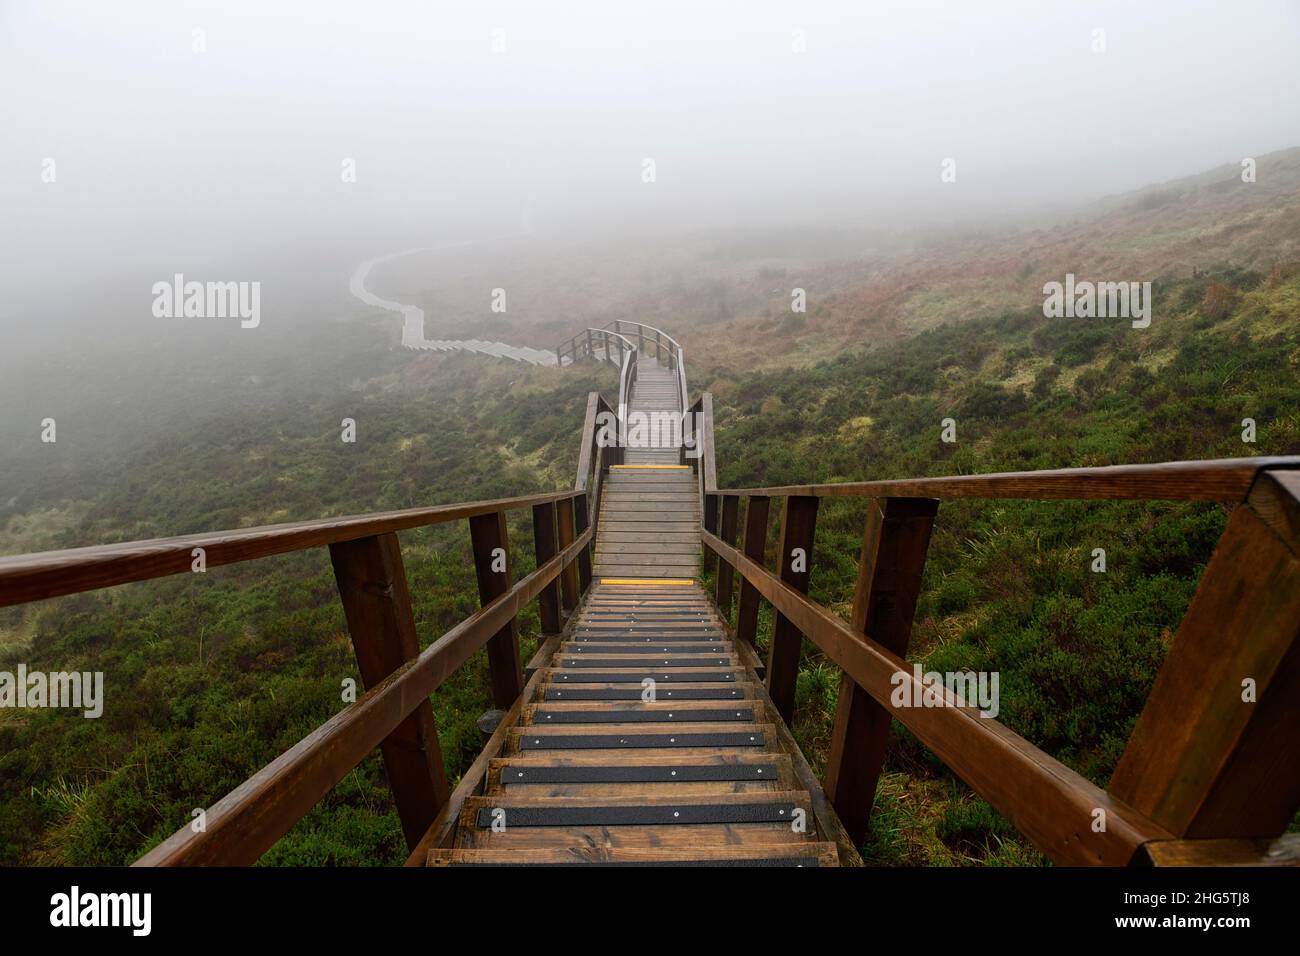 Escalera al cielo, Cuilcagh Boardwalk Trail, Cuilcagh Legnabrocosa Trail, niebla, niebla, clima niebla, poca visibilidad, mal tiempo, mal tiempo para caminatas, hiki Foto de stock